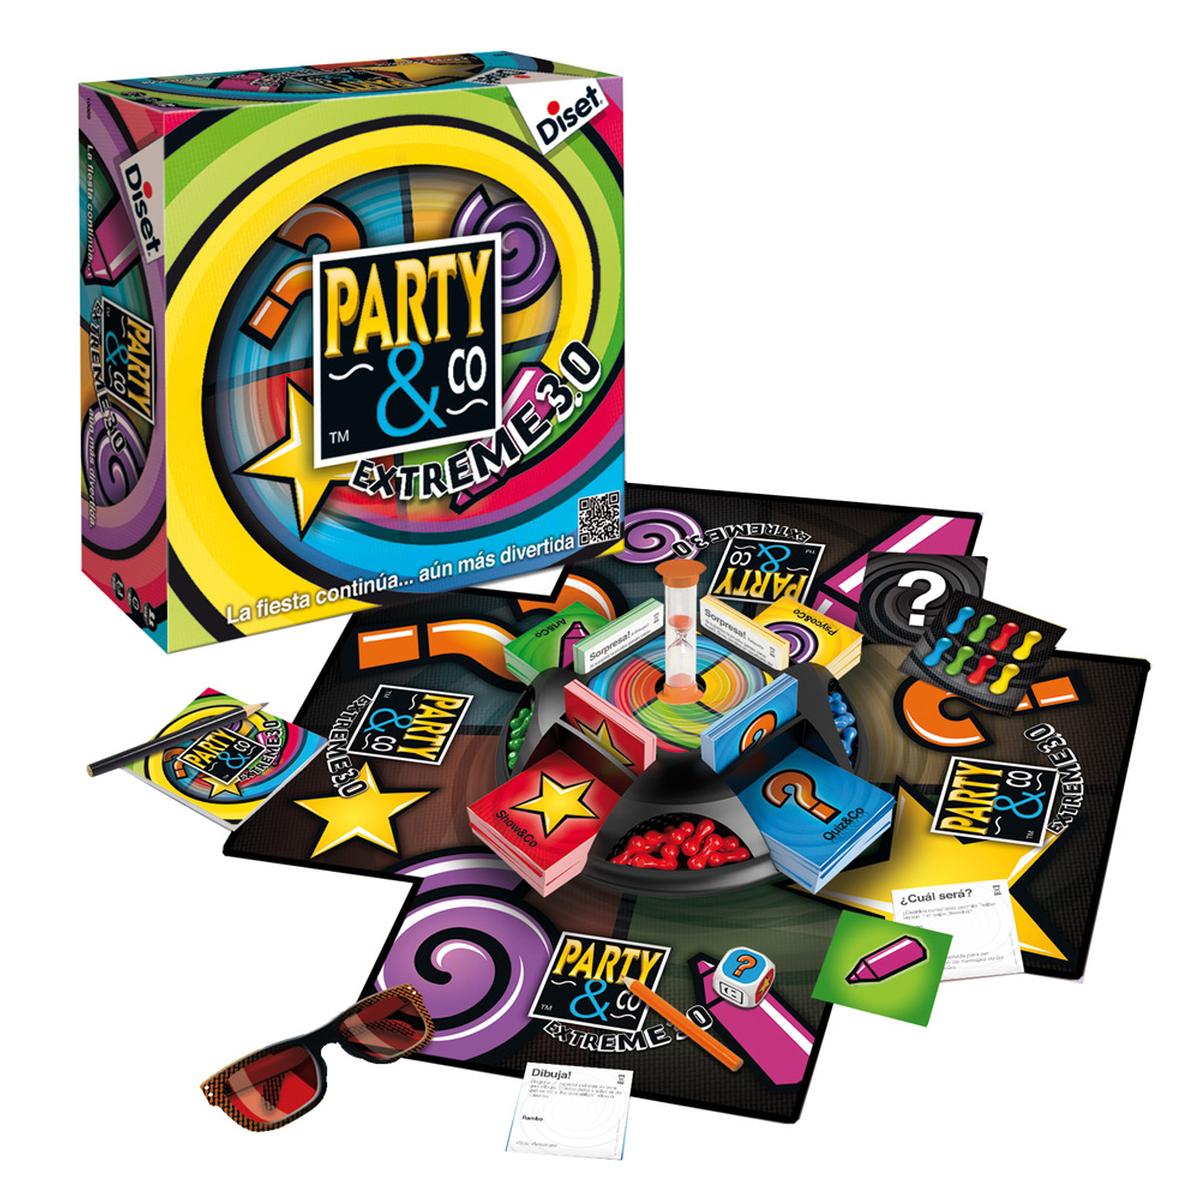 Party & Co Extreme 3.0 | Juegos Niños +5 Años | Toys"R"Us España